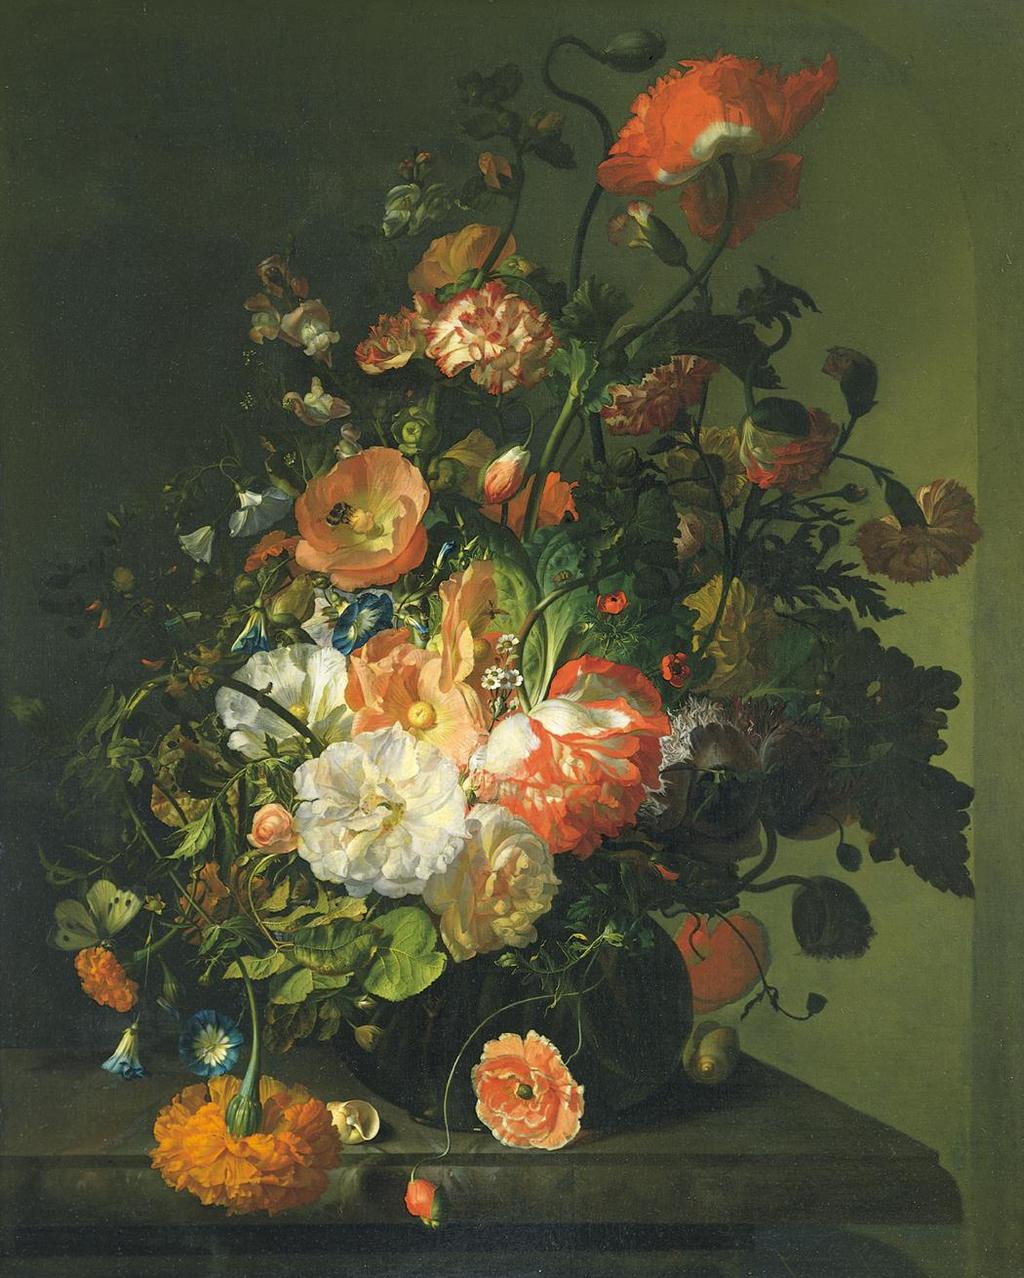 Figure 25-23 RACHEL RUYSCH, Flower Still Life, after 1700. Oil on canvas, 2 5 3/4 x 1 11 7/8.